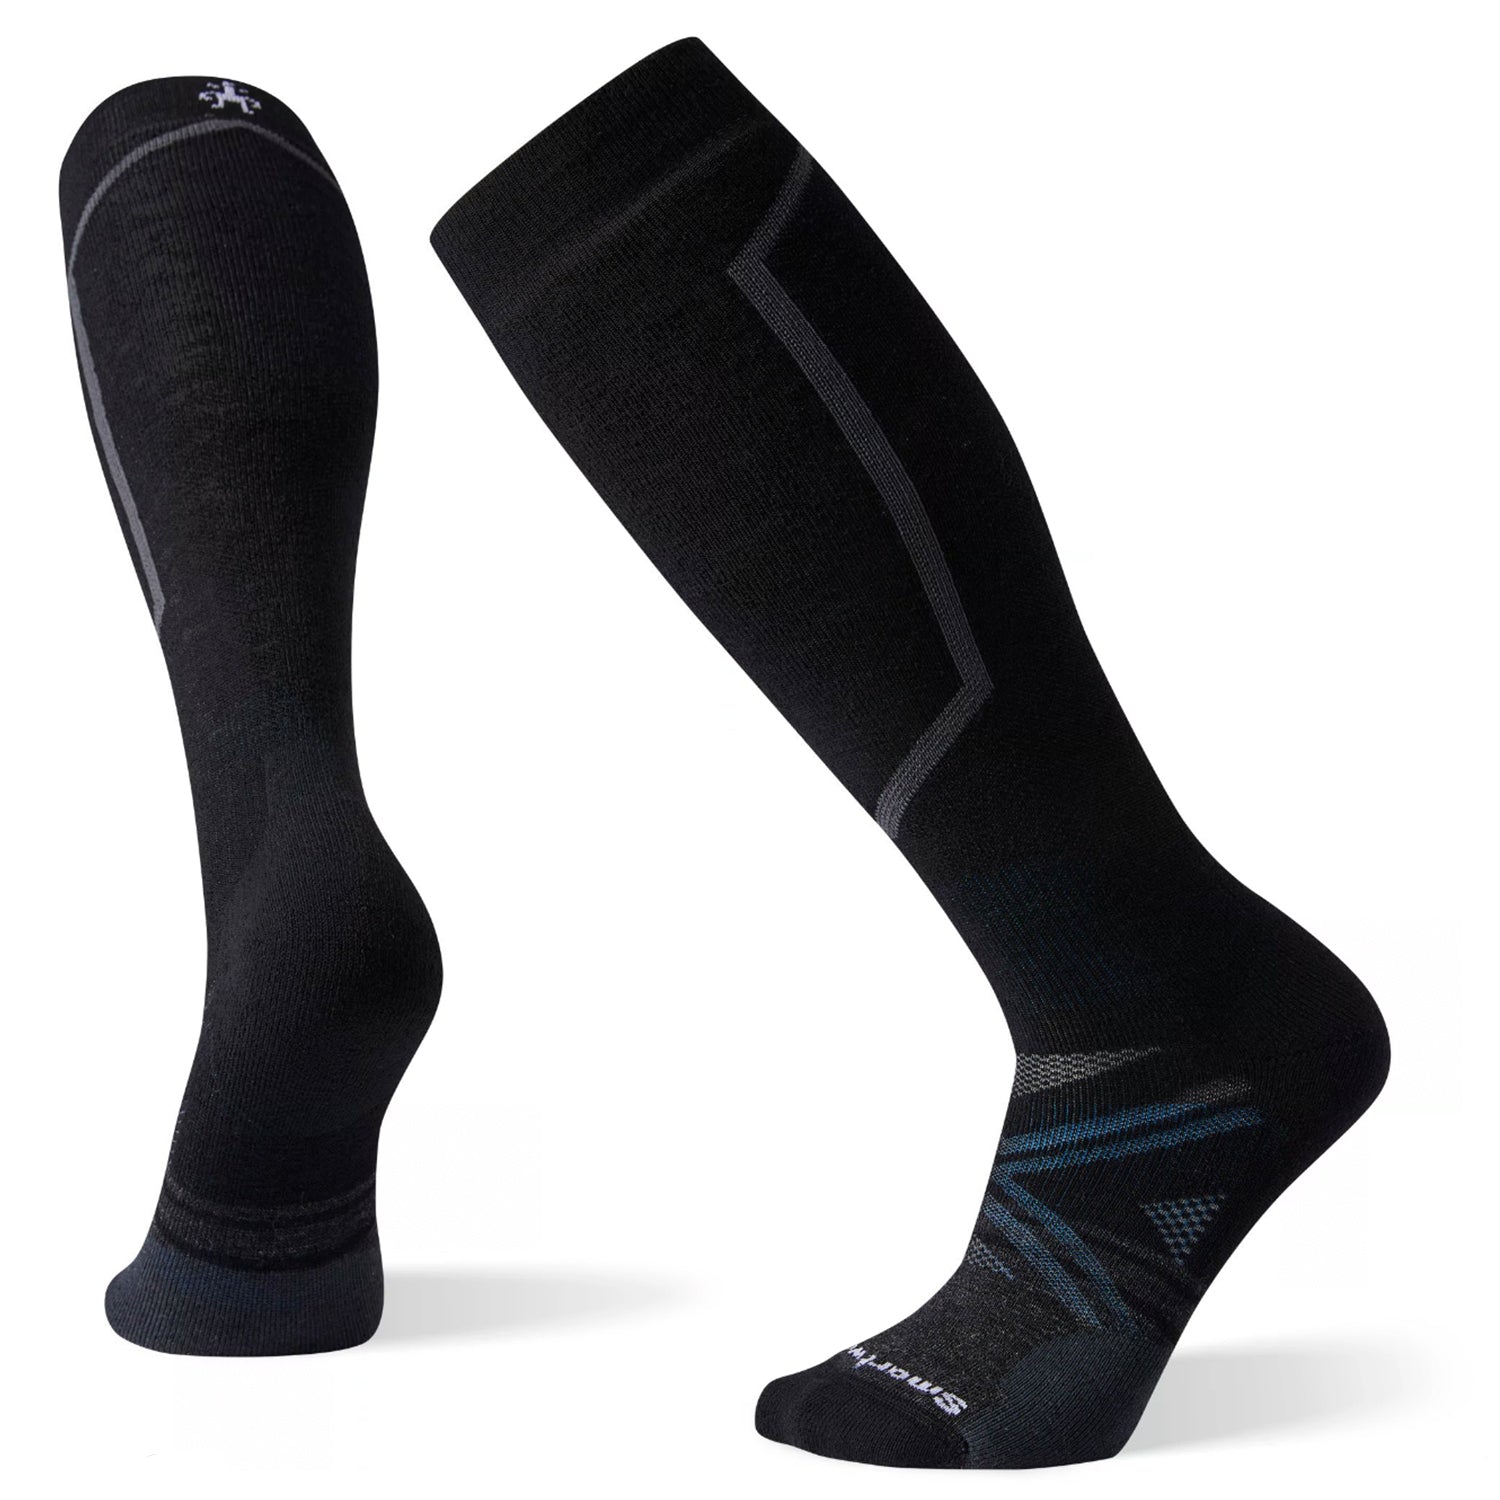 Smartwool Unisex Ski Full Cushion Over the Calf Socks - Black